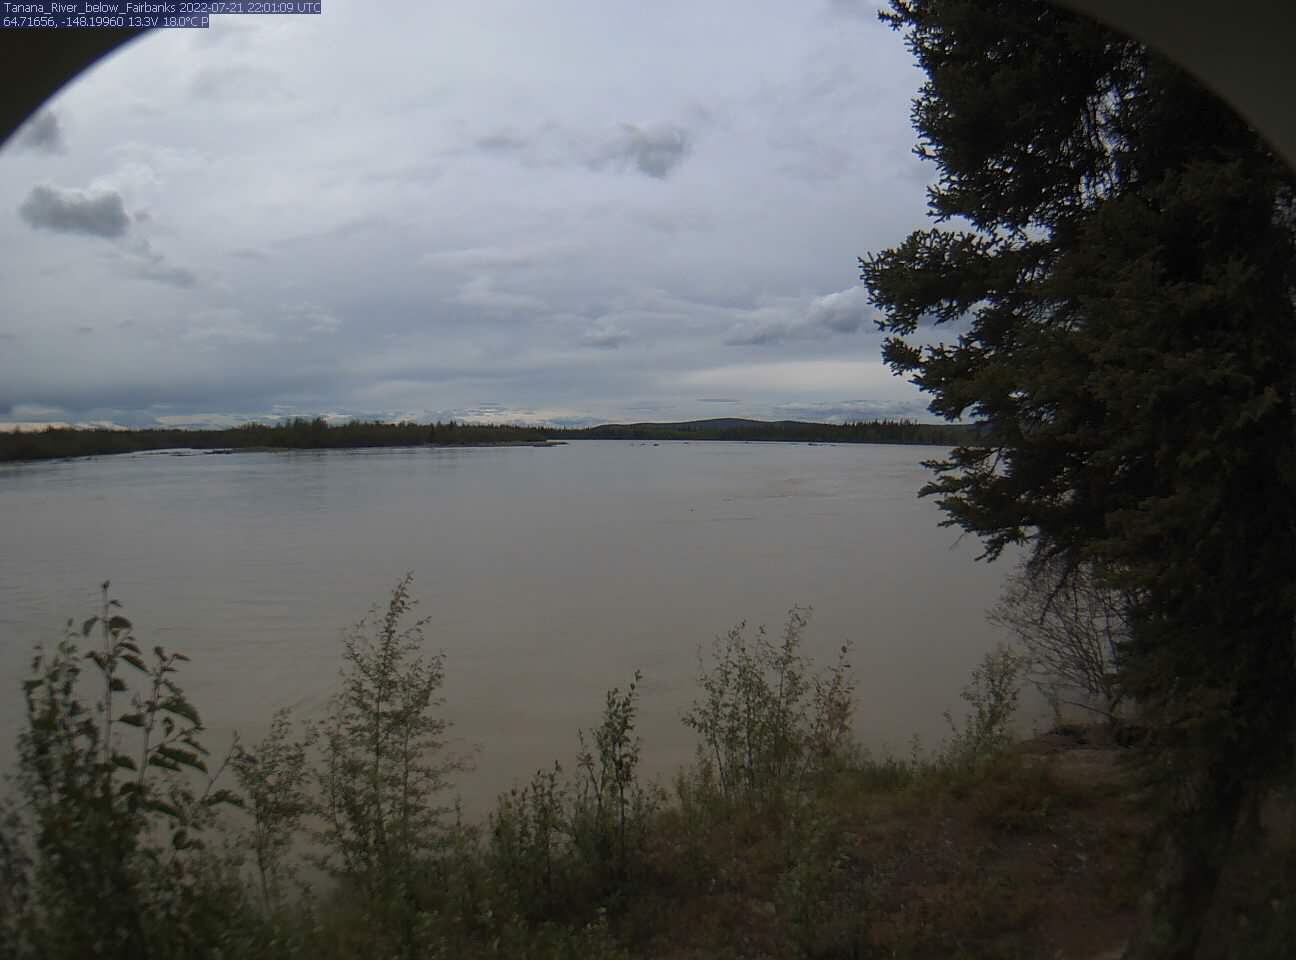 Tanana_River_below_Fairbanks_20220721220110.jpg